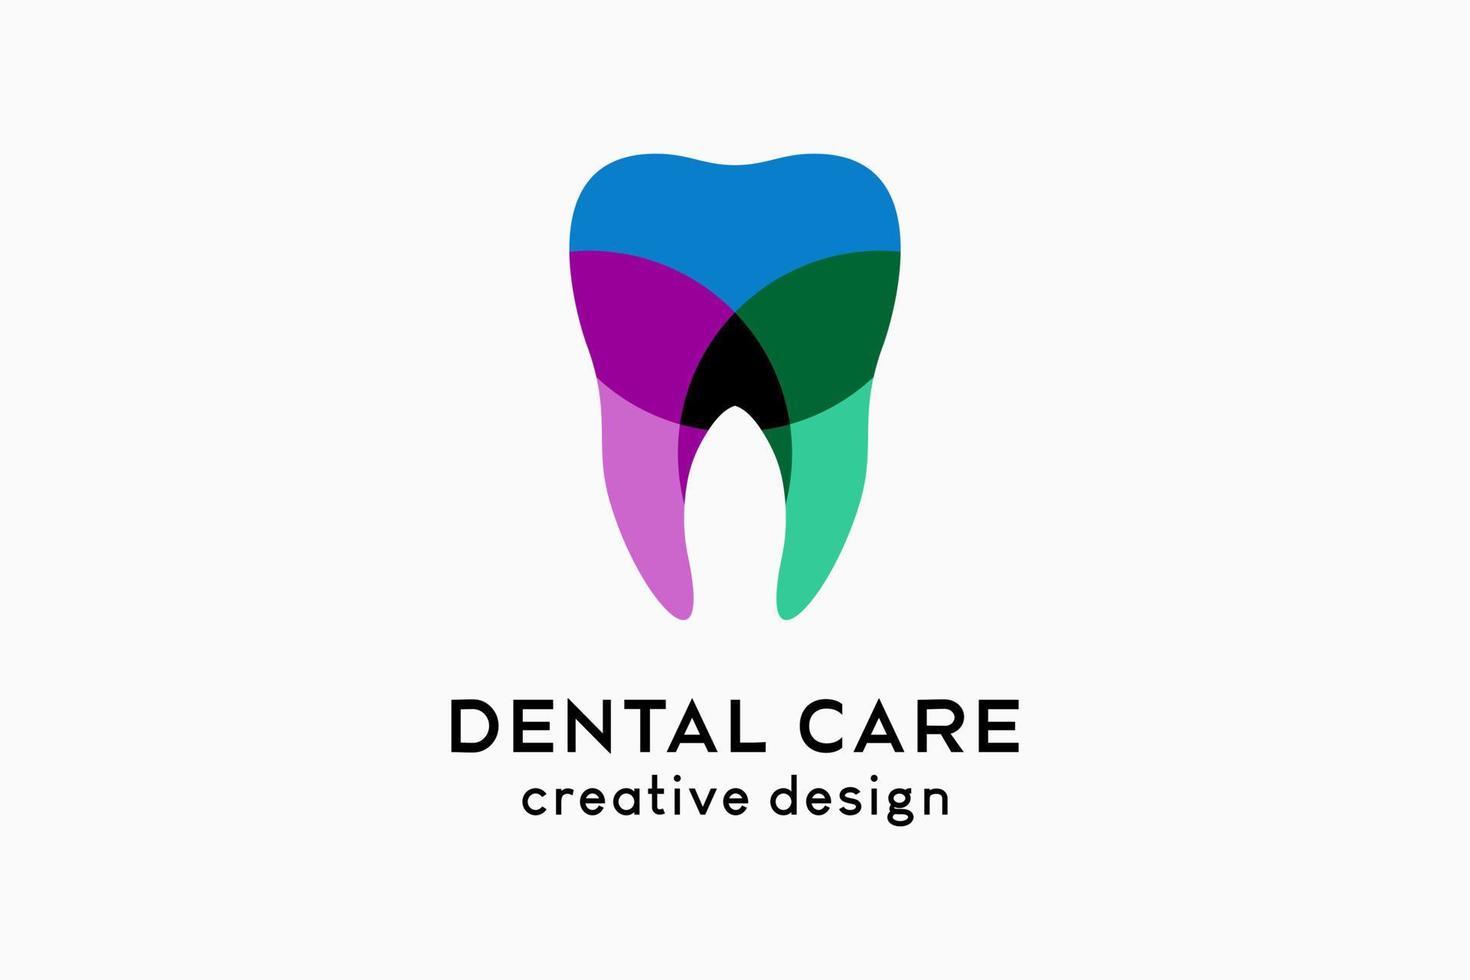 création de logo de soins dentaires avec concept moderne créatif de couleur empilée vecteur